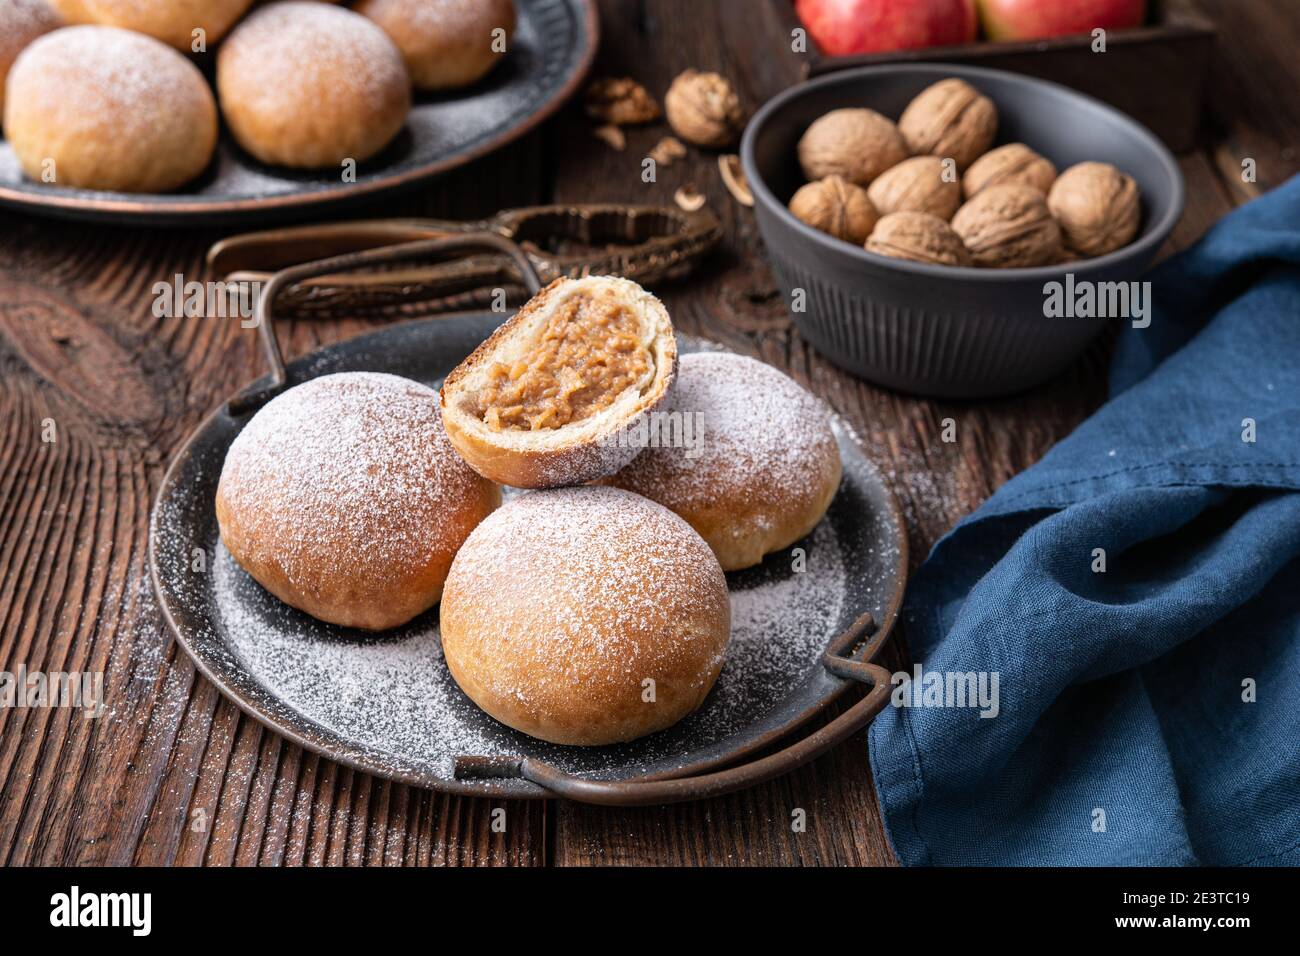 Délicieuse pâtisserie sucrée, petits pains cuits avec garniture aux pommes et aux noix, saupoudrés de sucre en poudre Banque D'Images